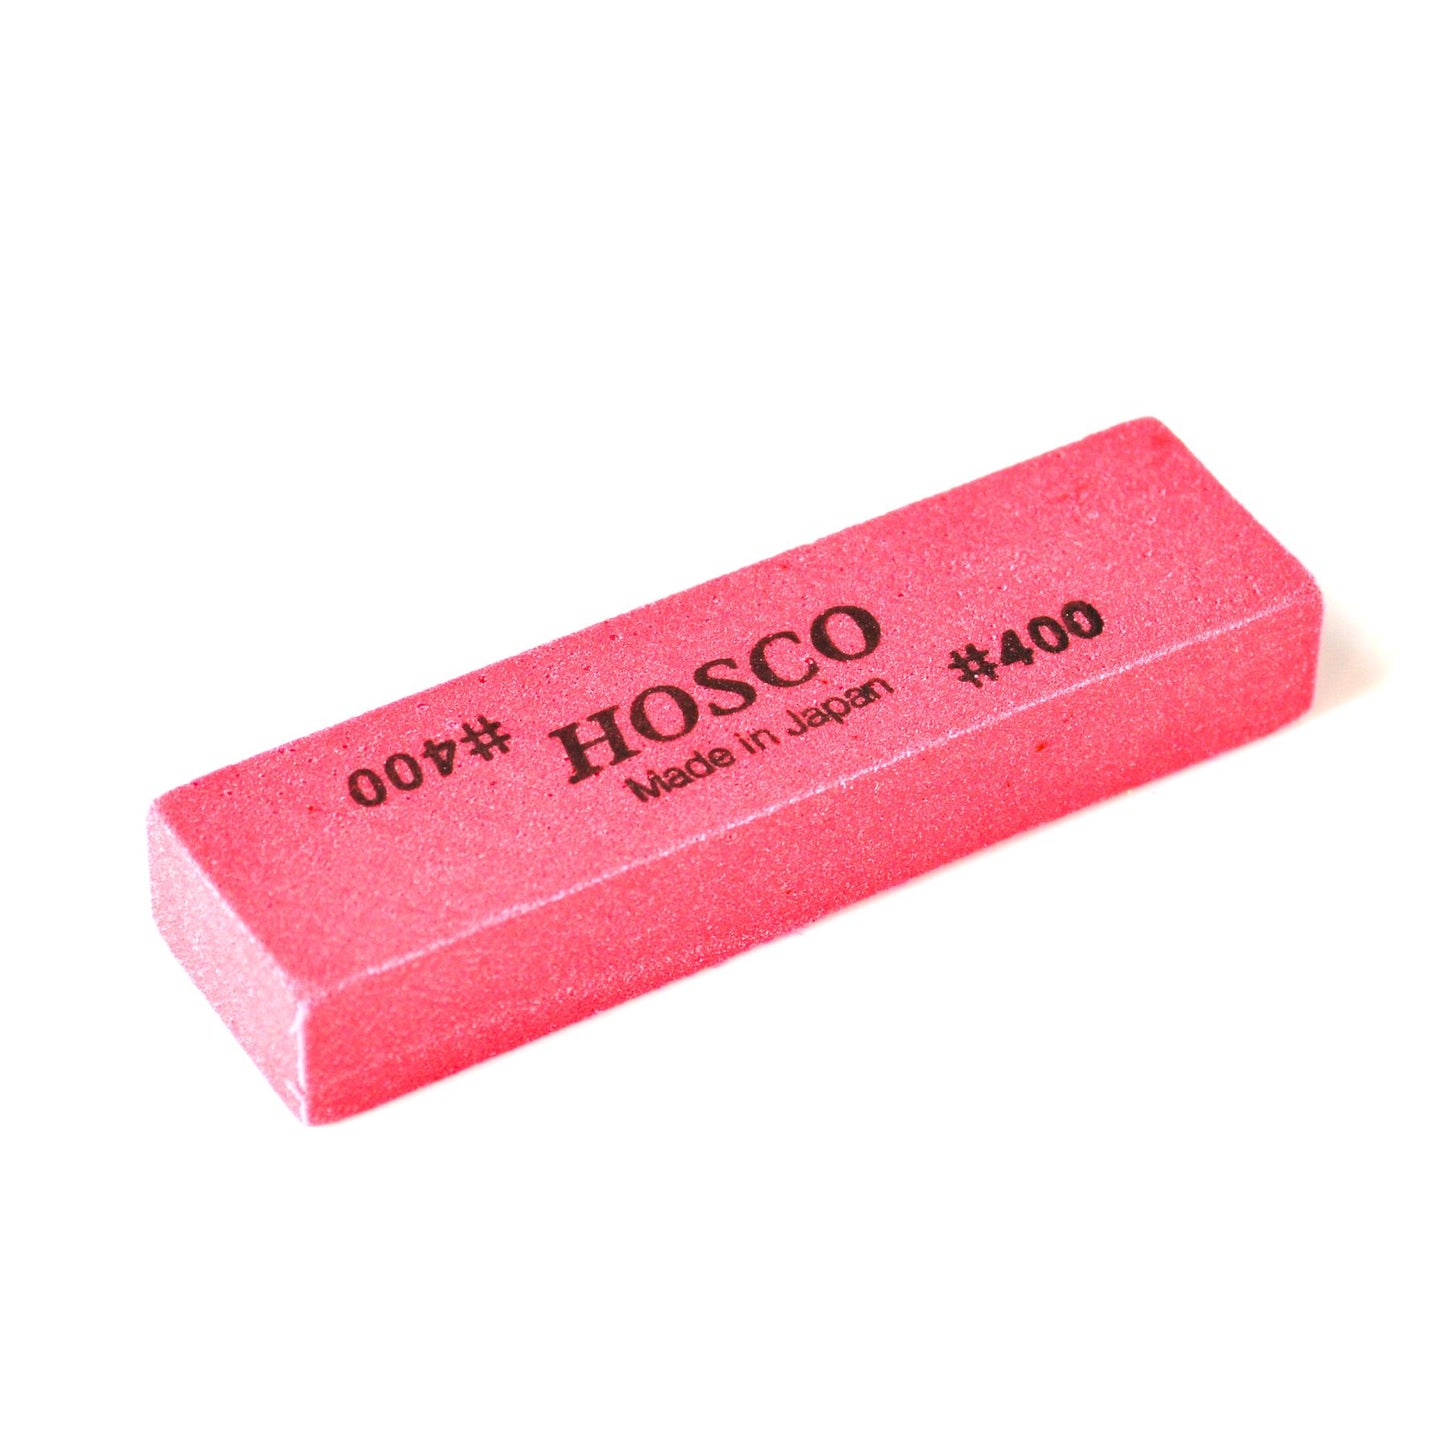 Hosco Fret Polishing Rubber - 400 Grit